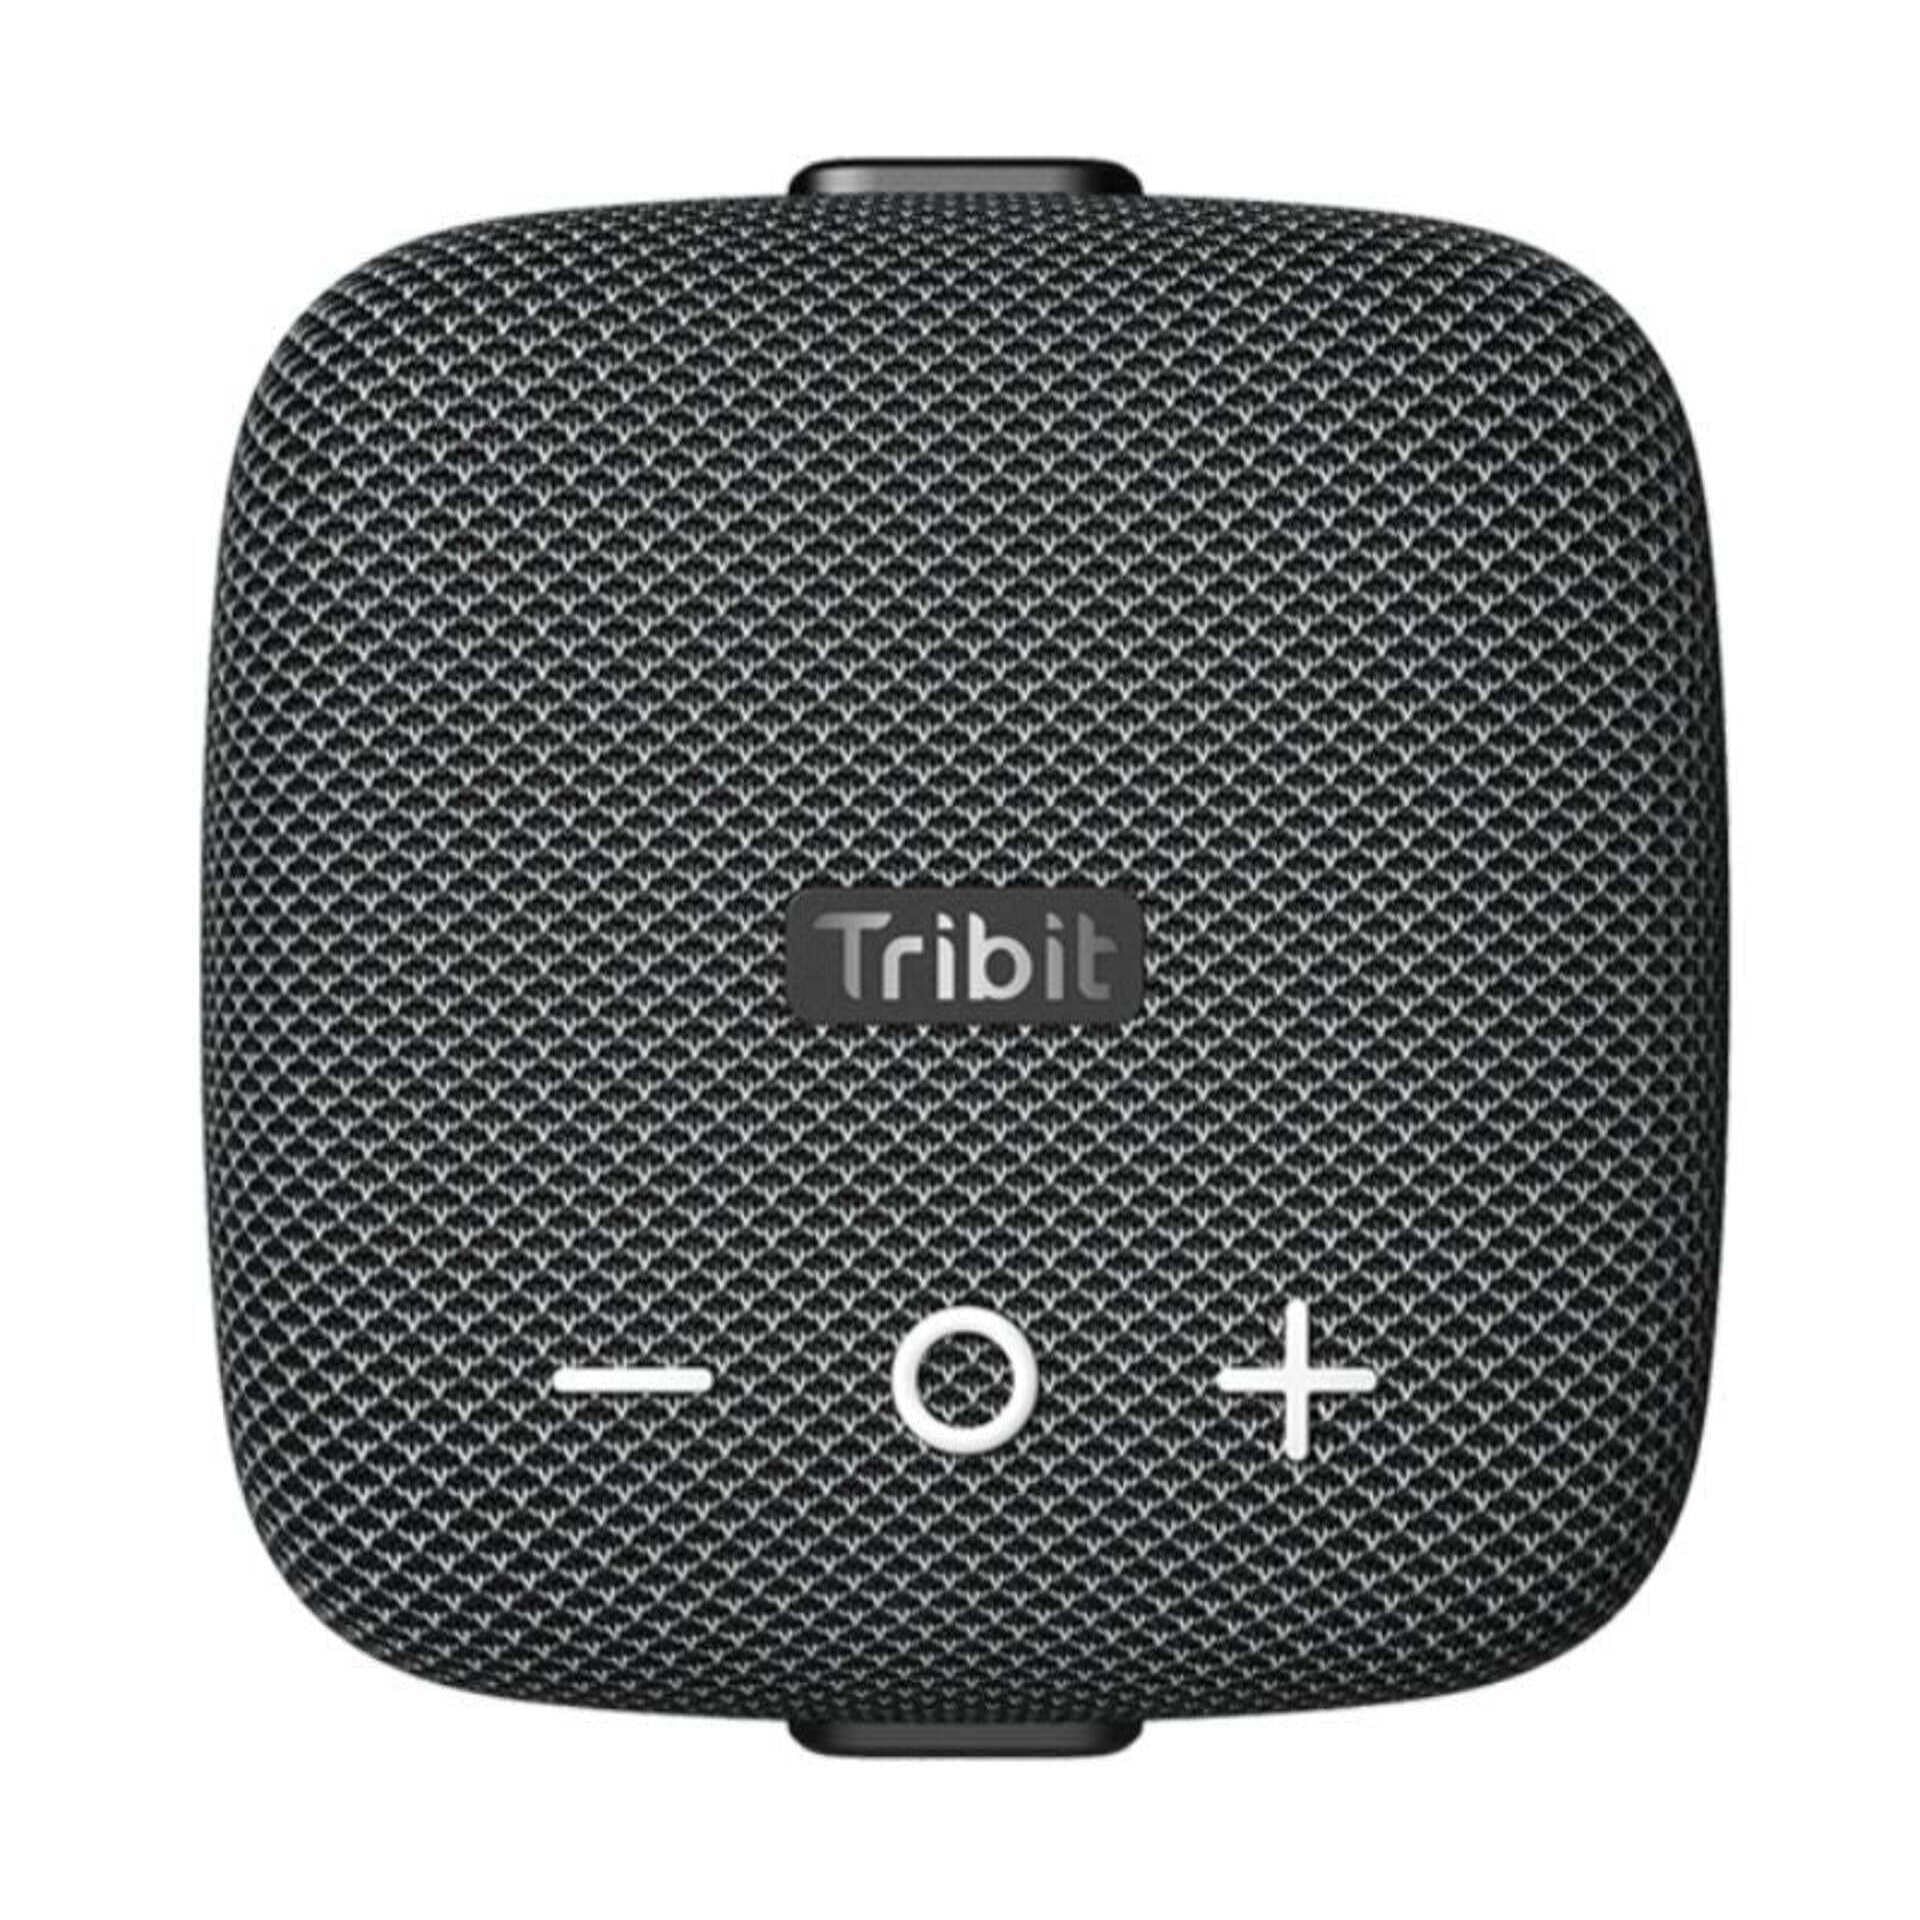 Tribit Audio Stormbox Micro 2 (Image via Tribit)